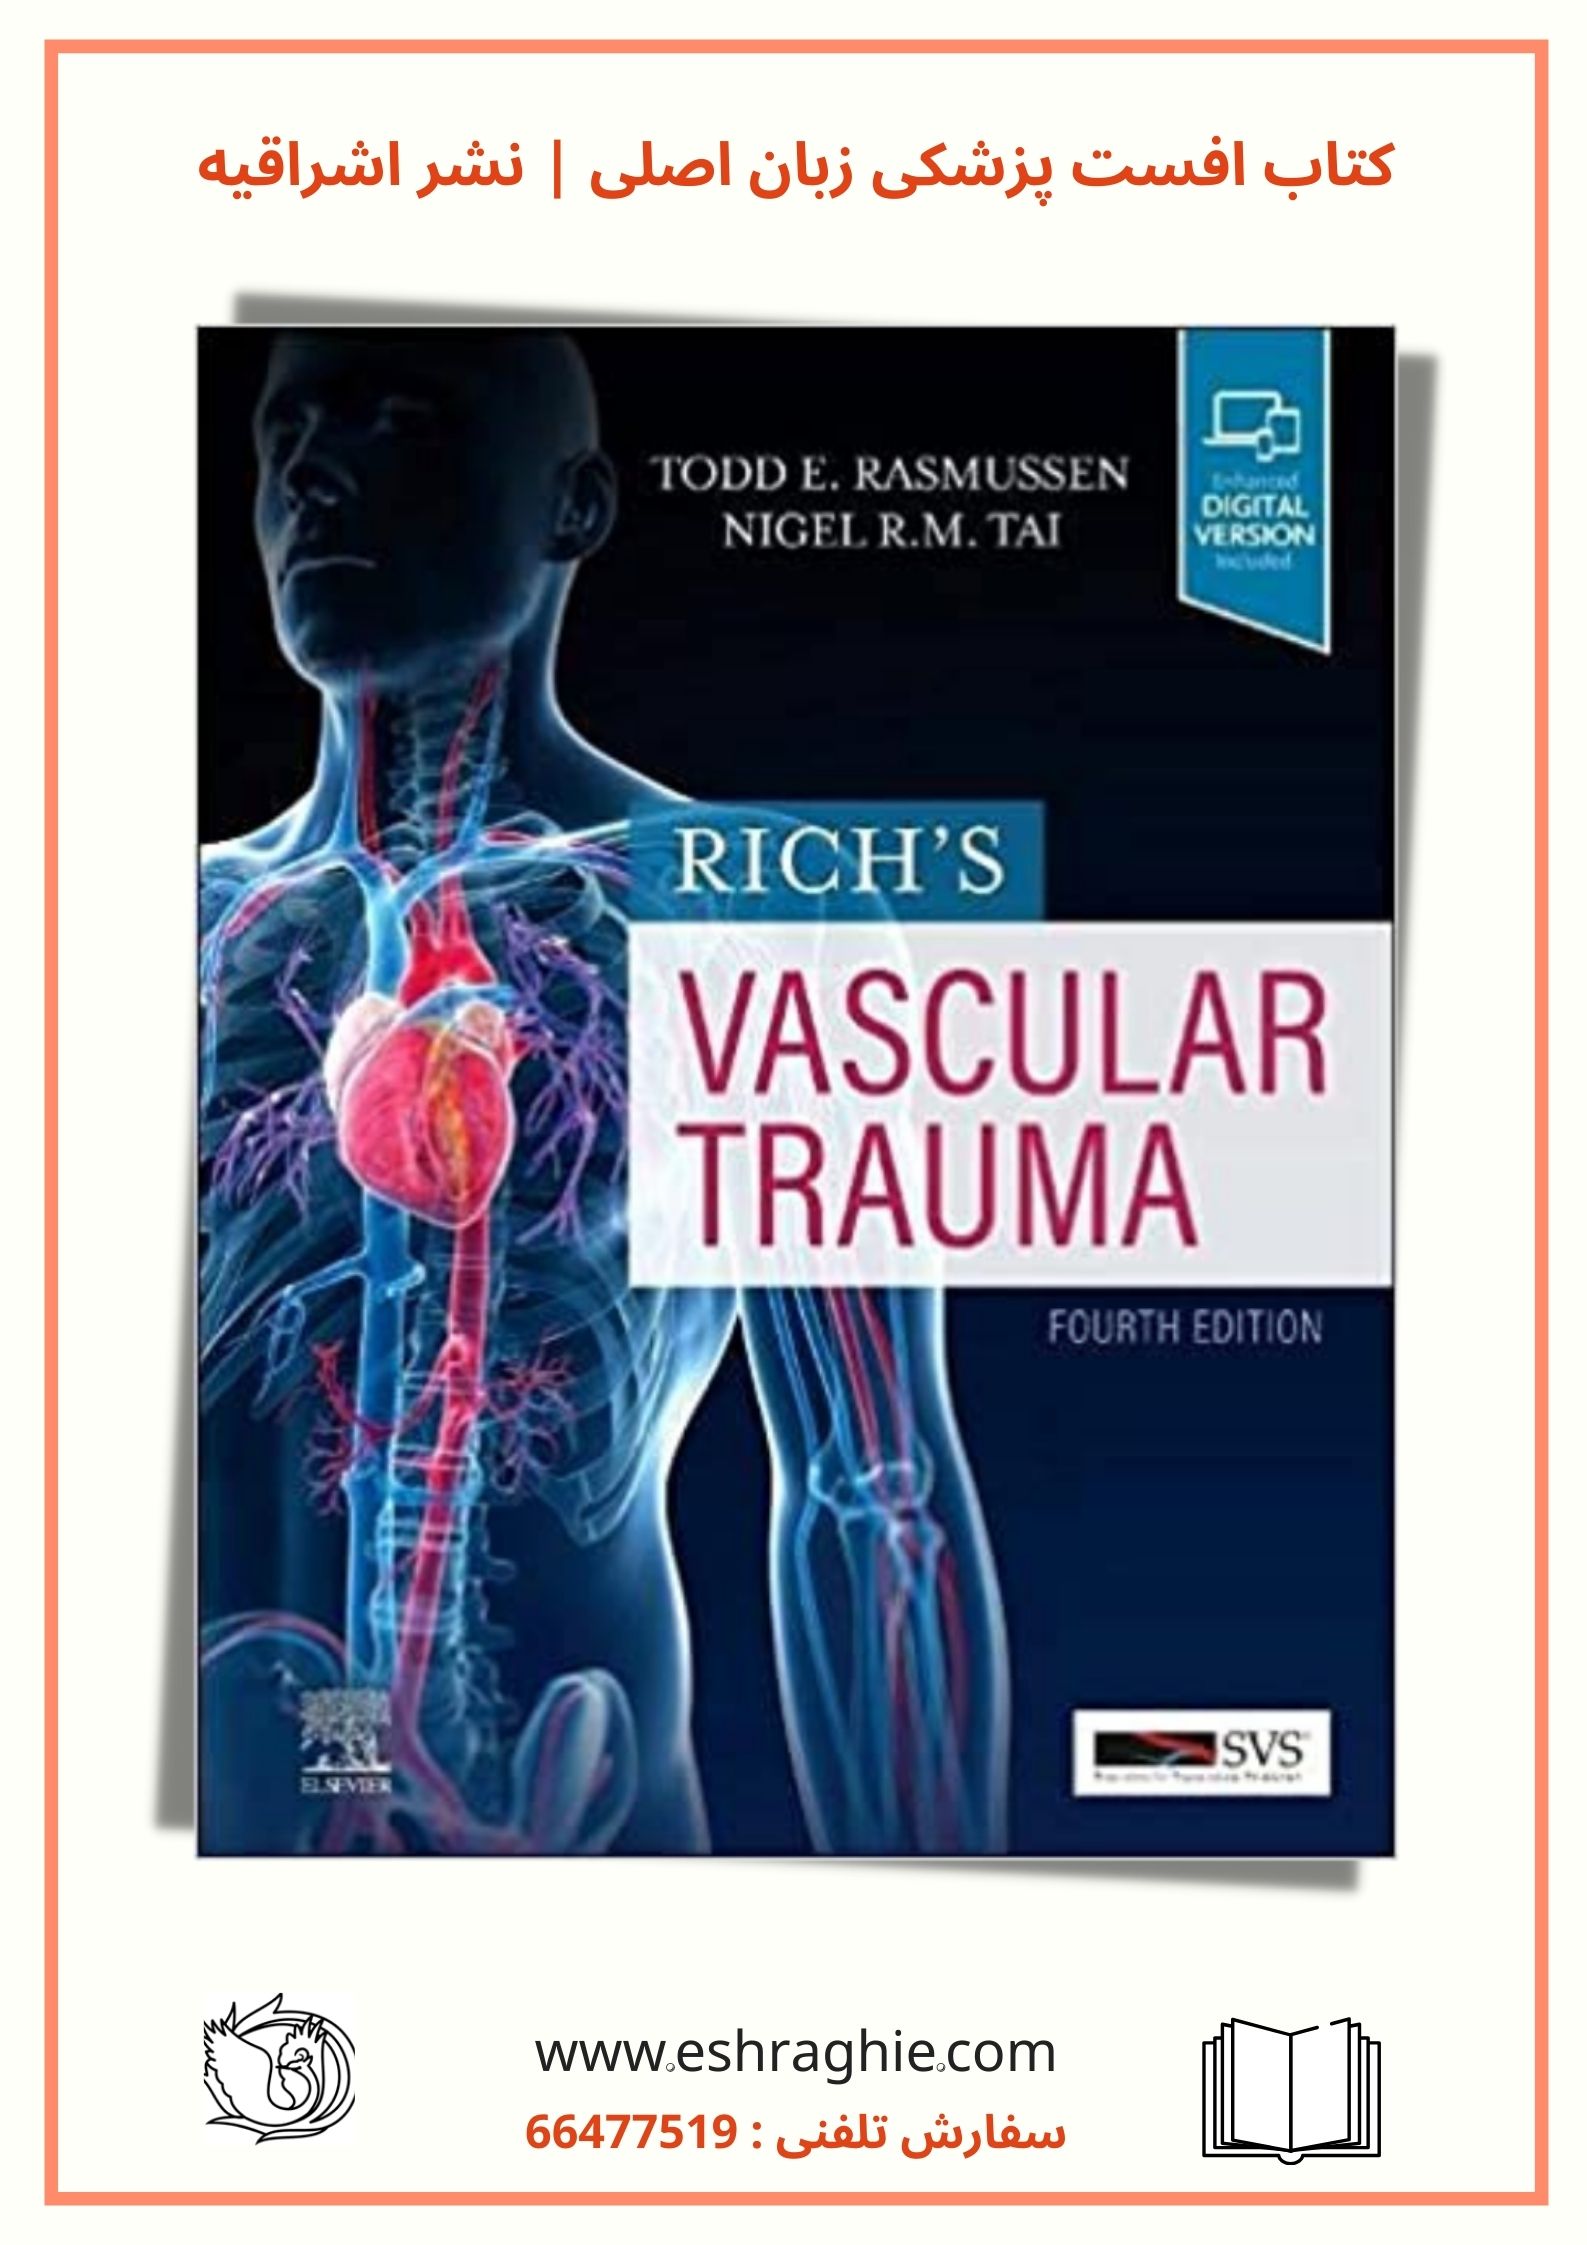 Rich’s Vascular Trauma | 4th Edition - 2021